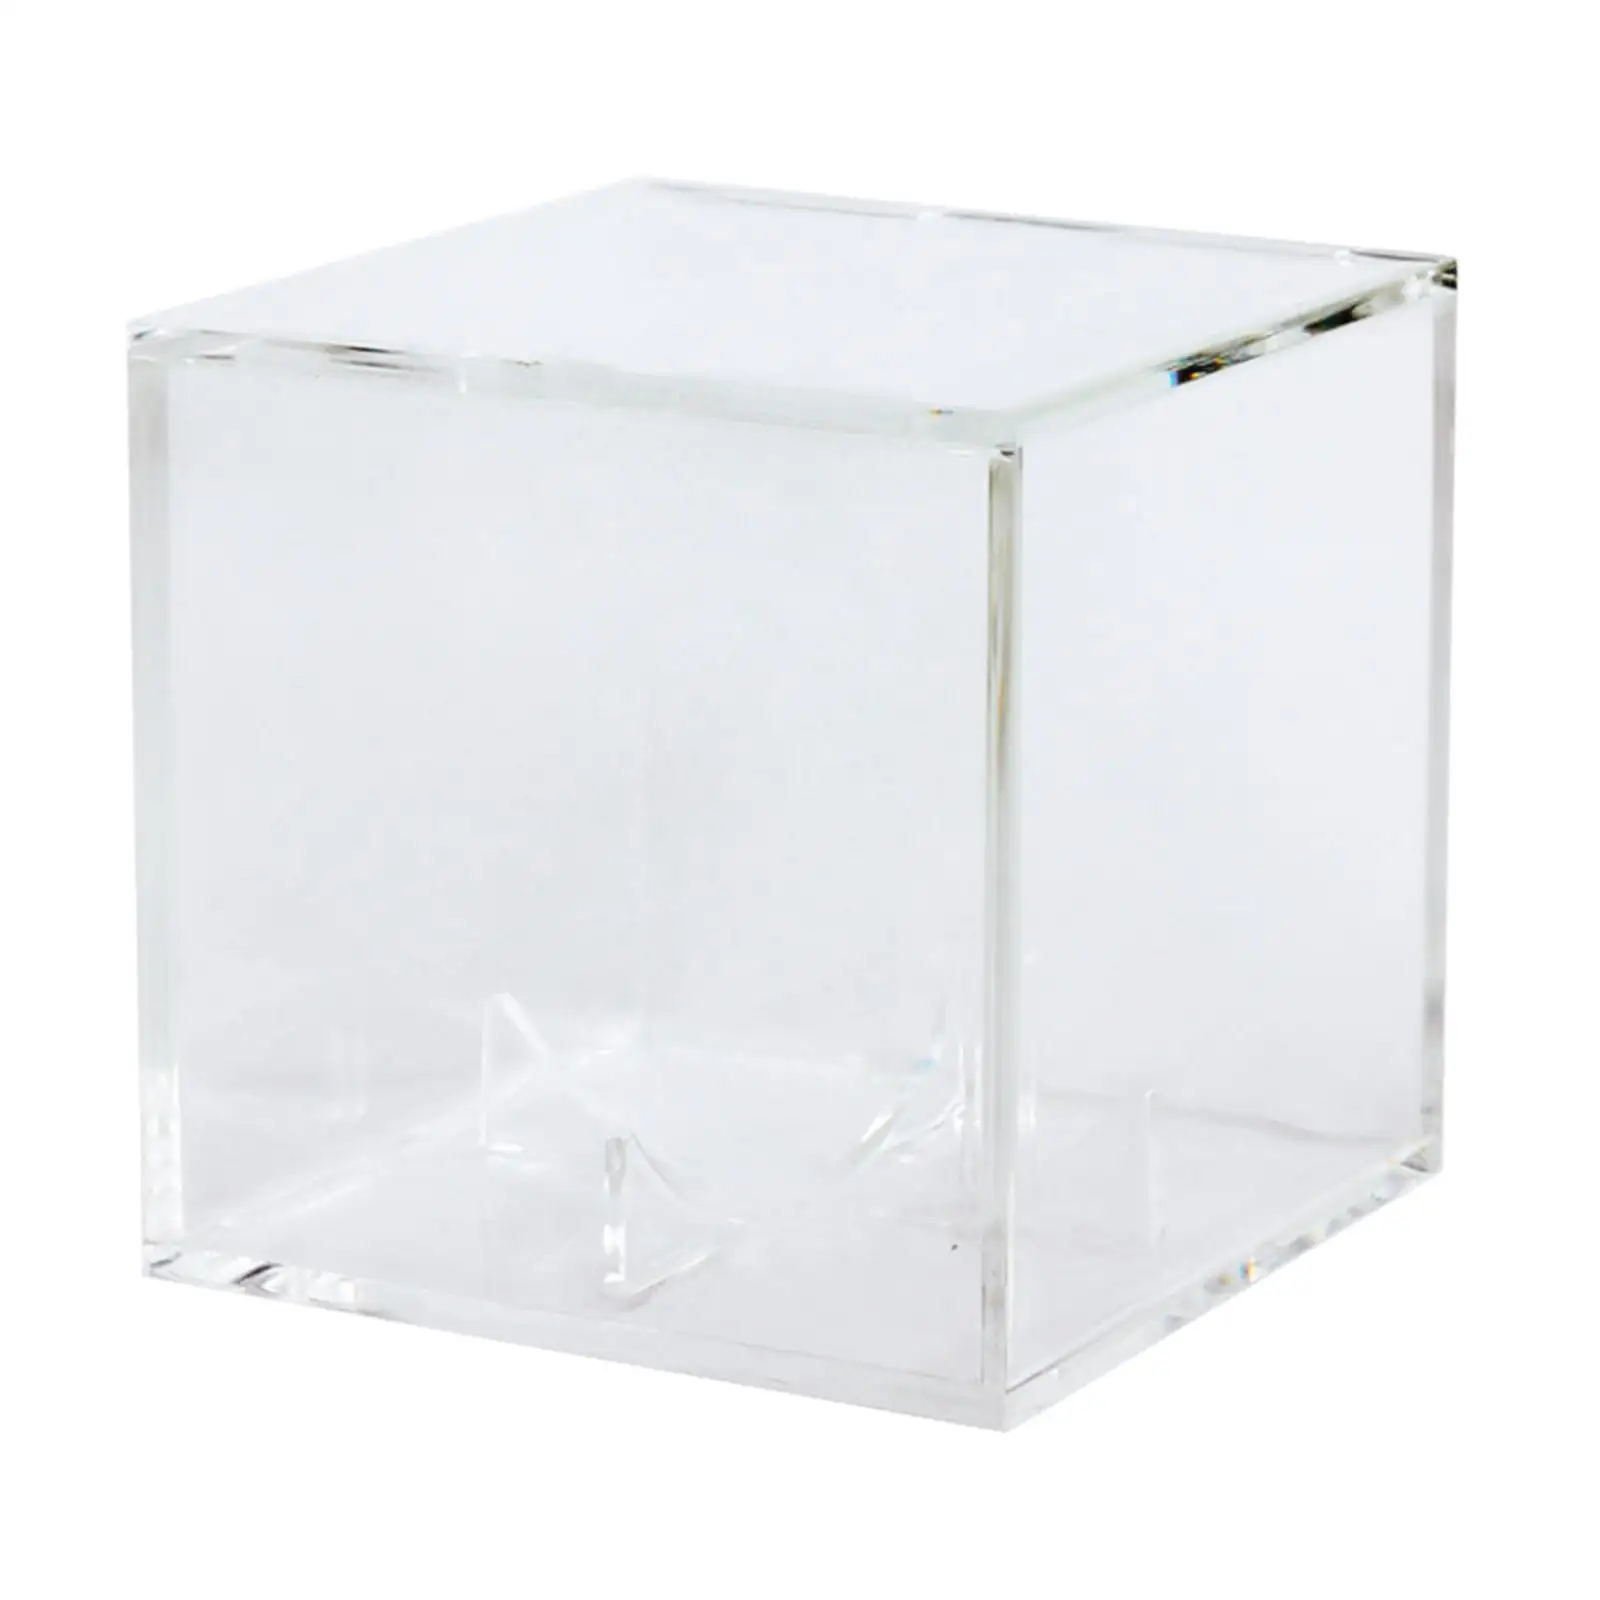 Clear Acrylic Baseball Box Showcase Storage boxes square Boxes Baseball Holder